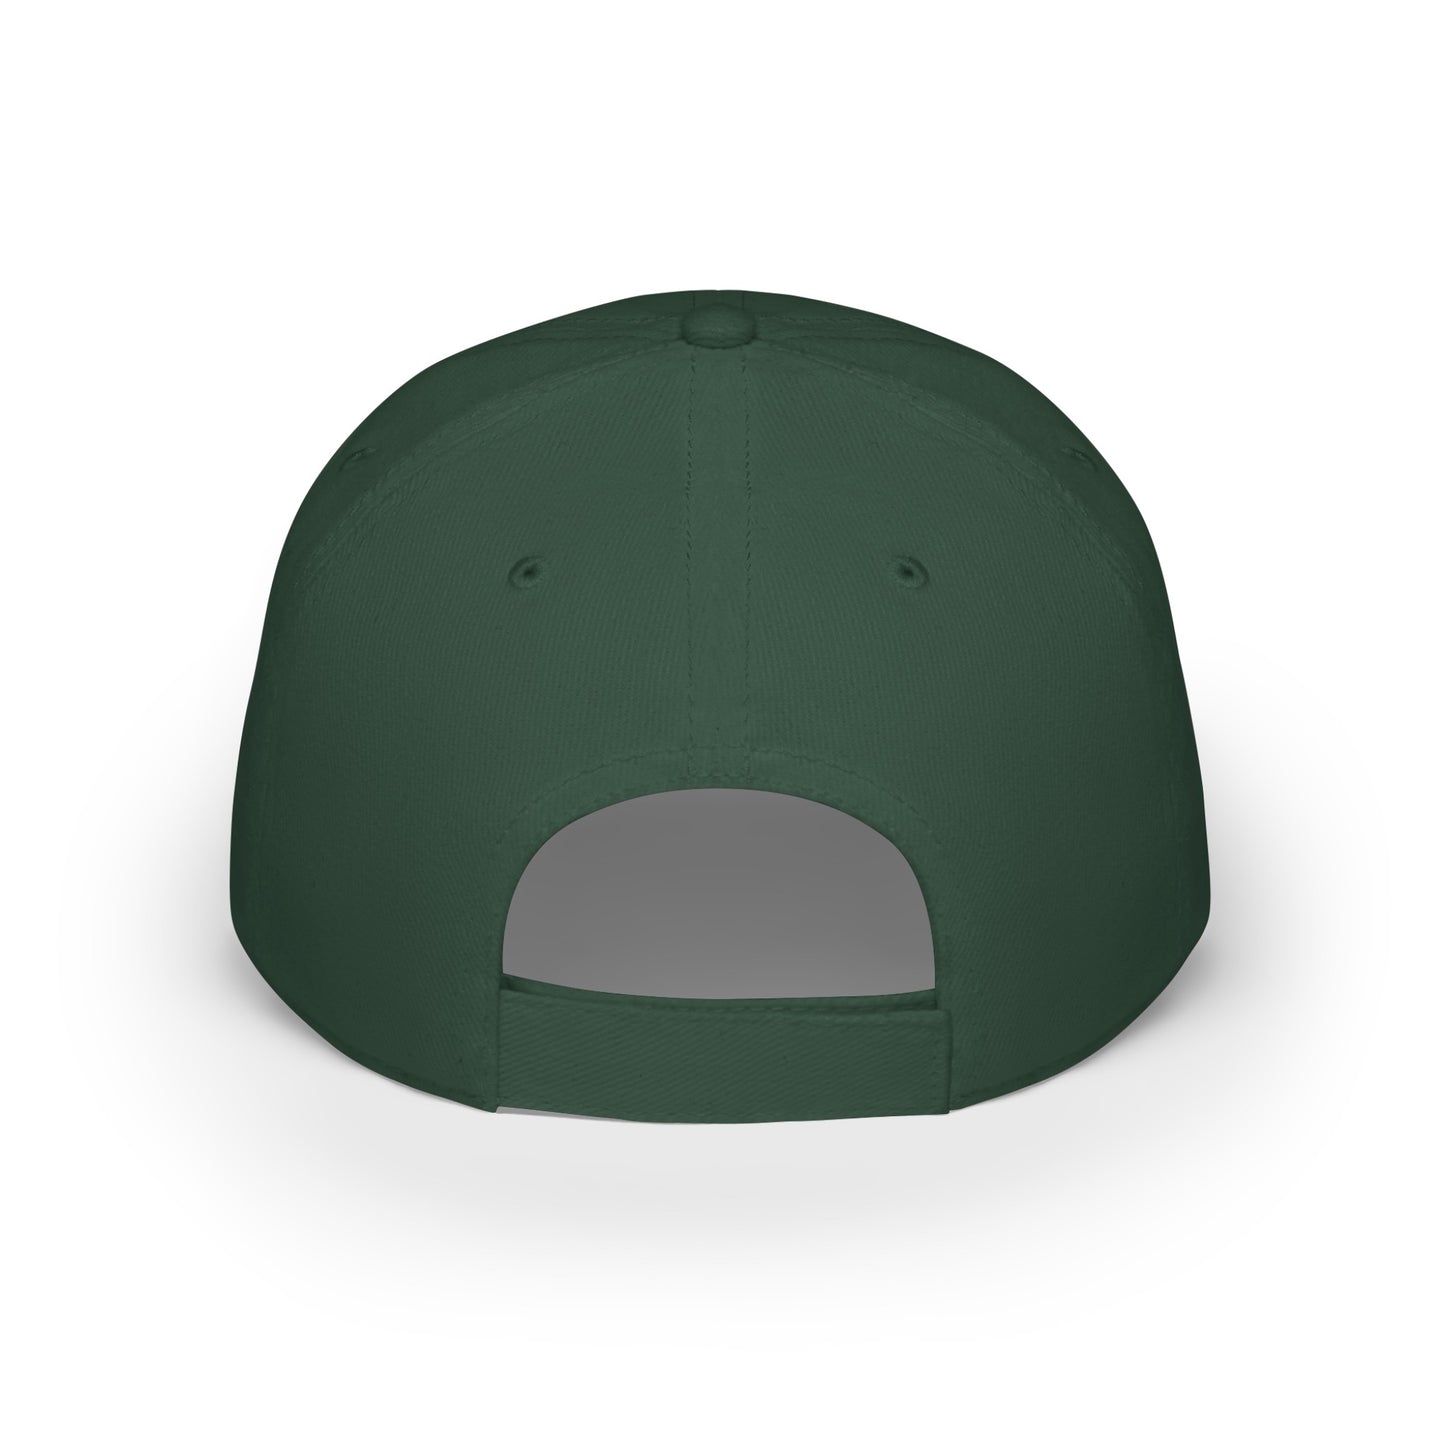 MDBTDJ#AJBLUC - Low Profile Baseball Cap Tattooed Dj's Limited Edition, Hats, Tattooed Djs Shop